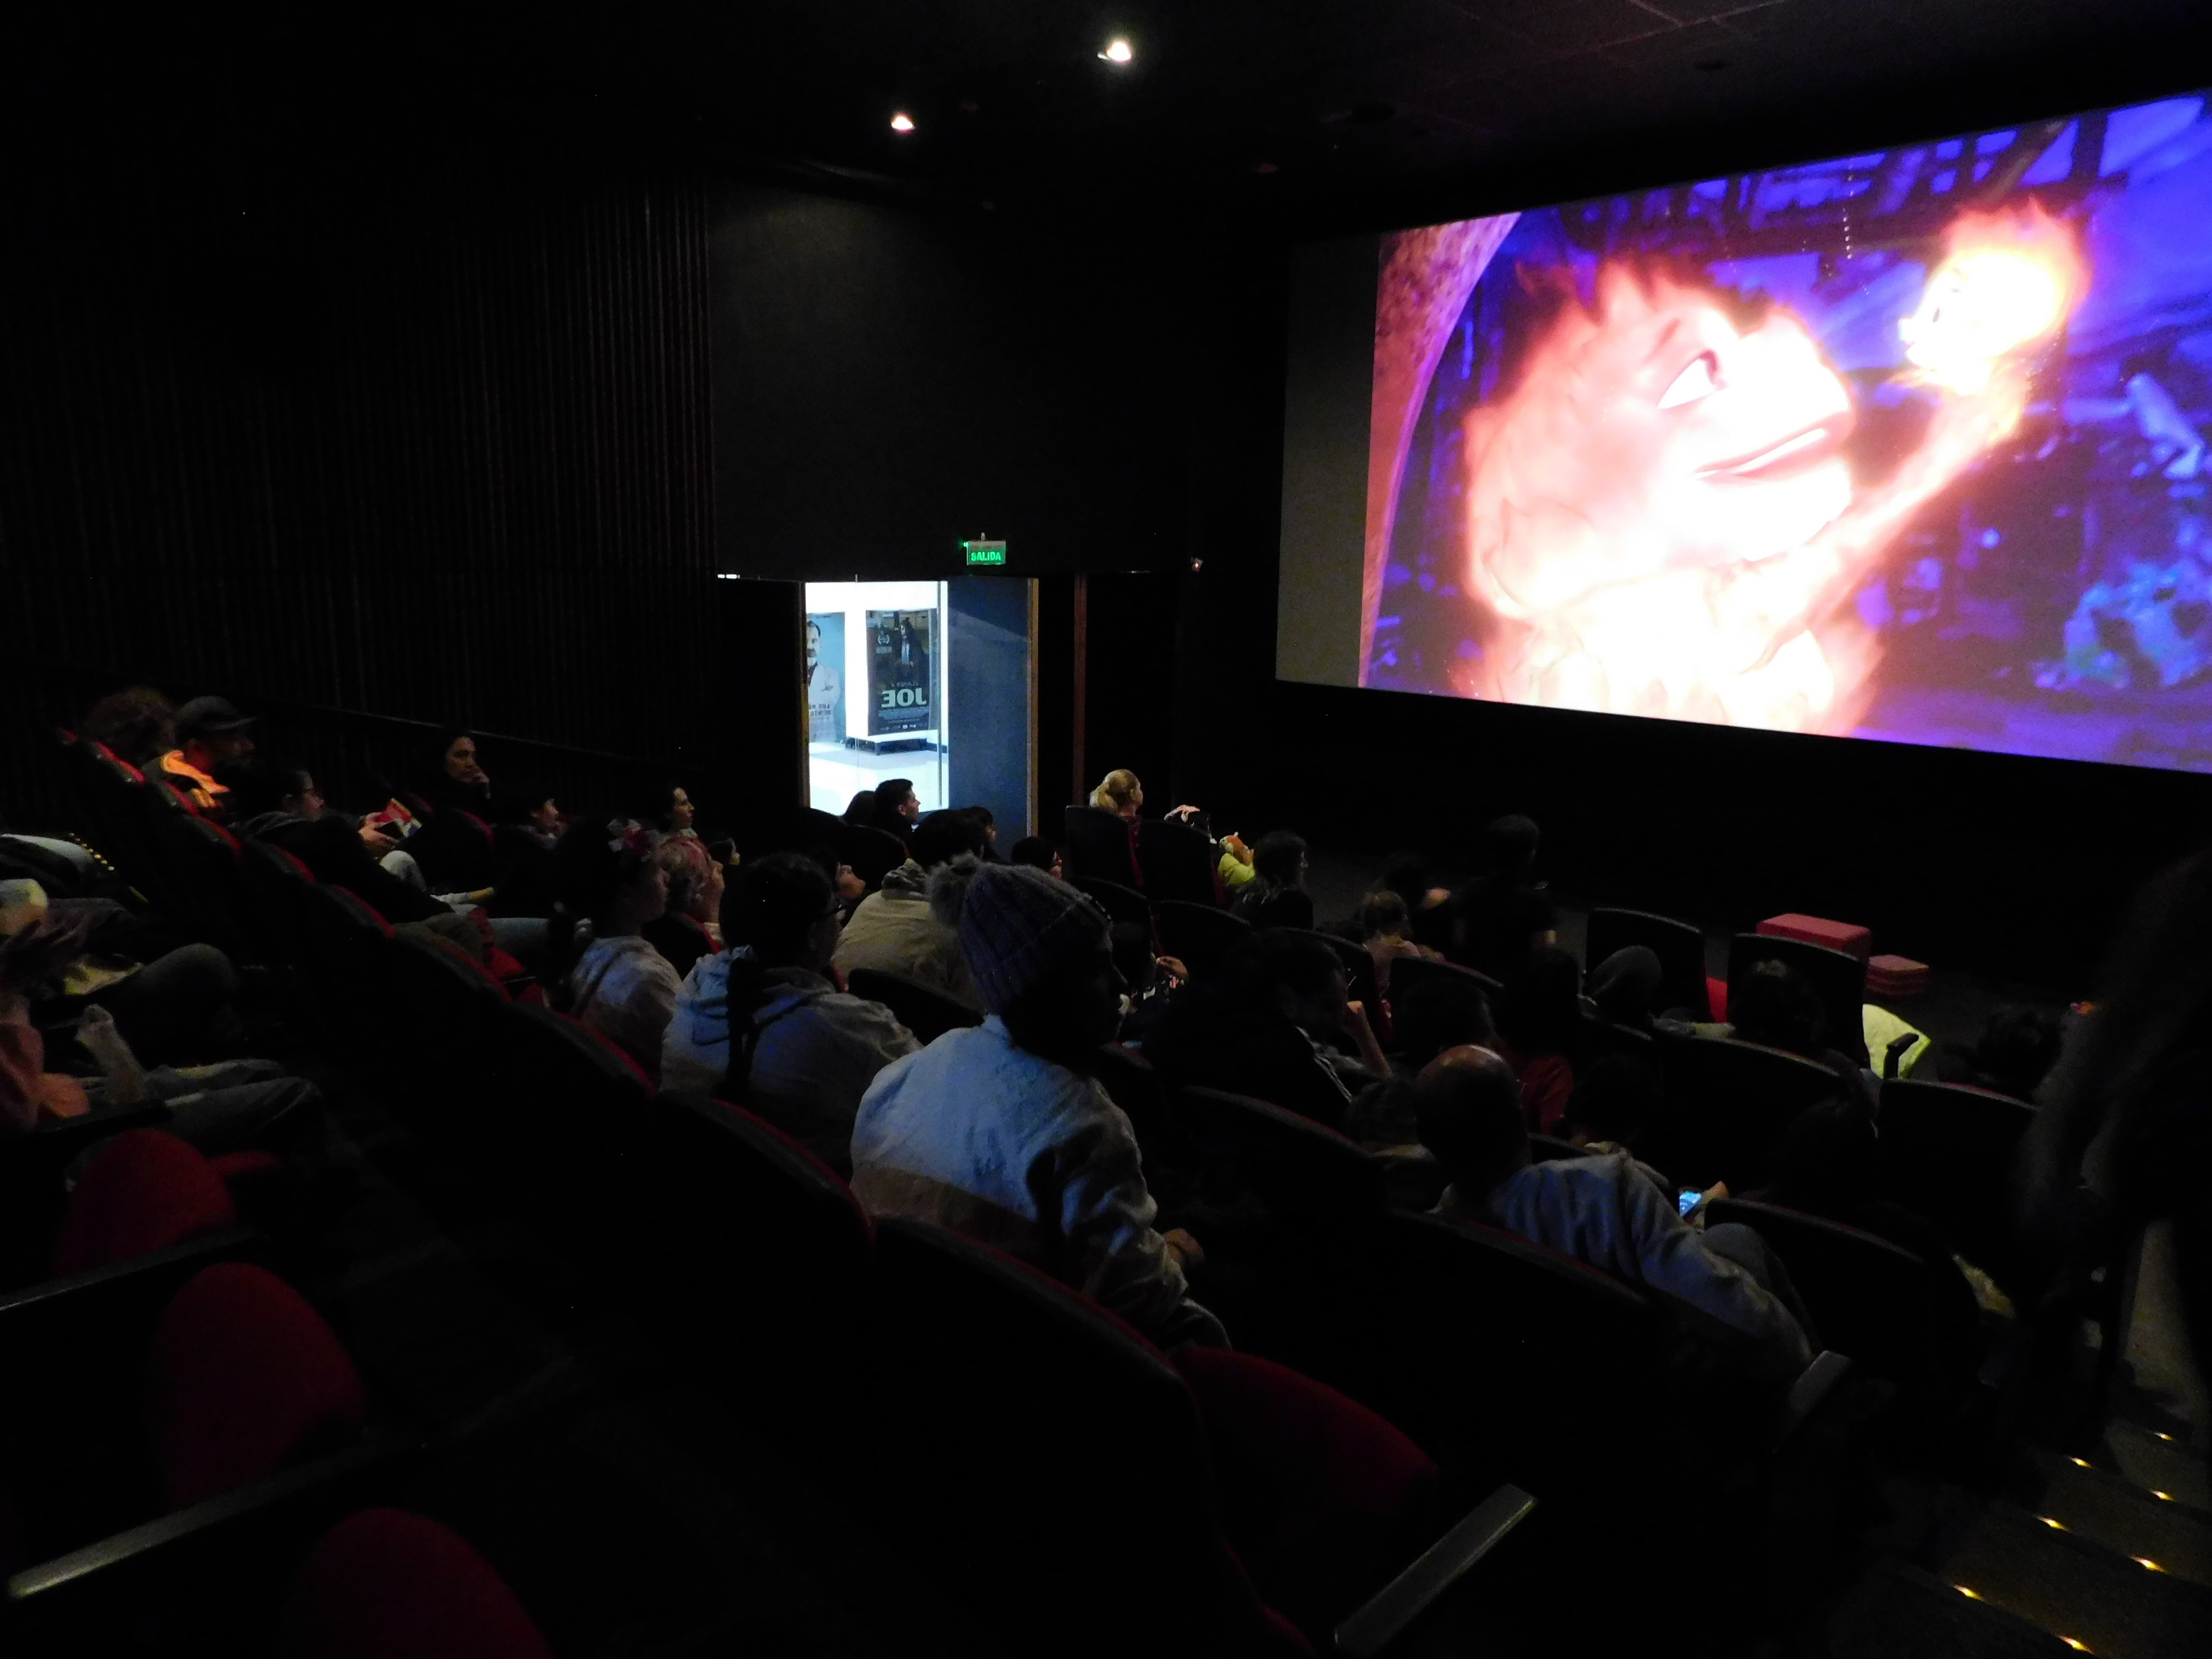 Fotografía tomada en lateral dentro de la sala de cine donde se observa a los asistentes de espaldas y de frente la pantalla de cine